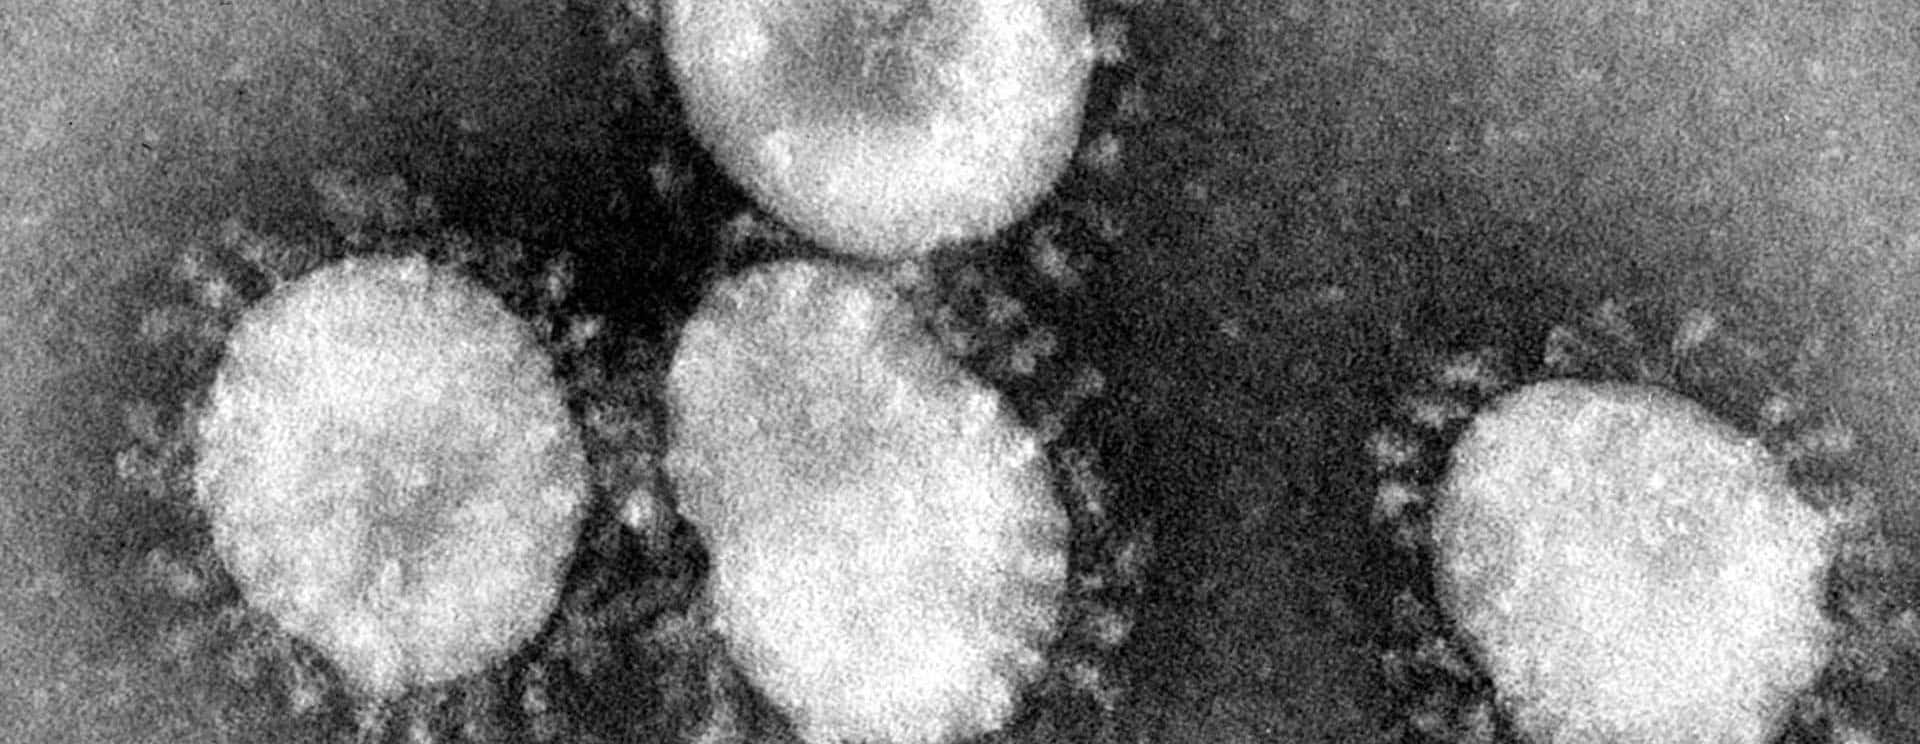 coronaviruses-jpg-28